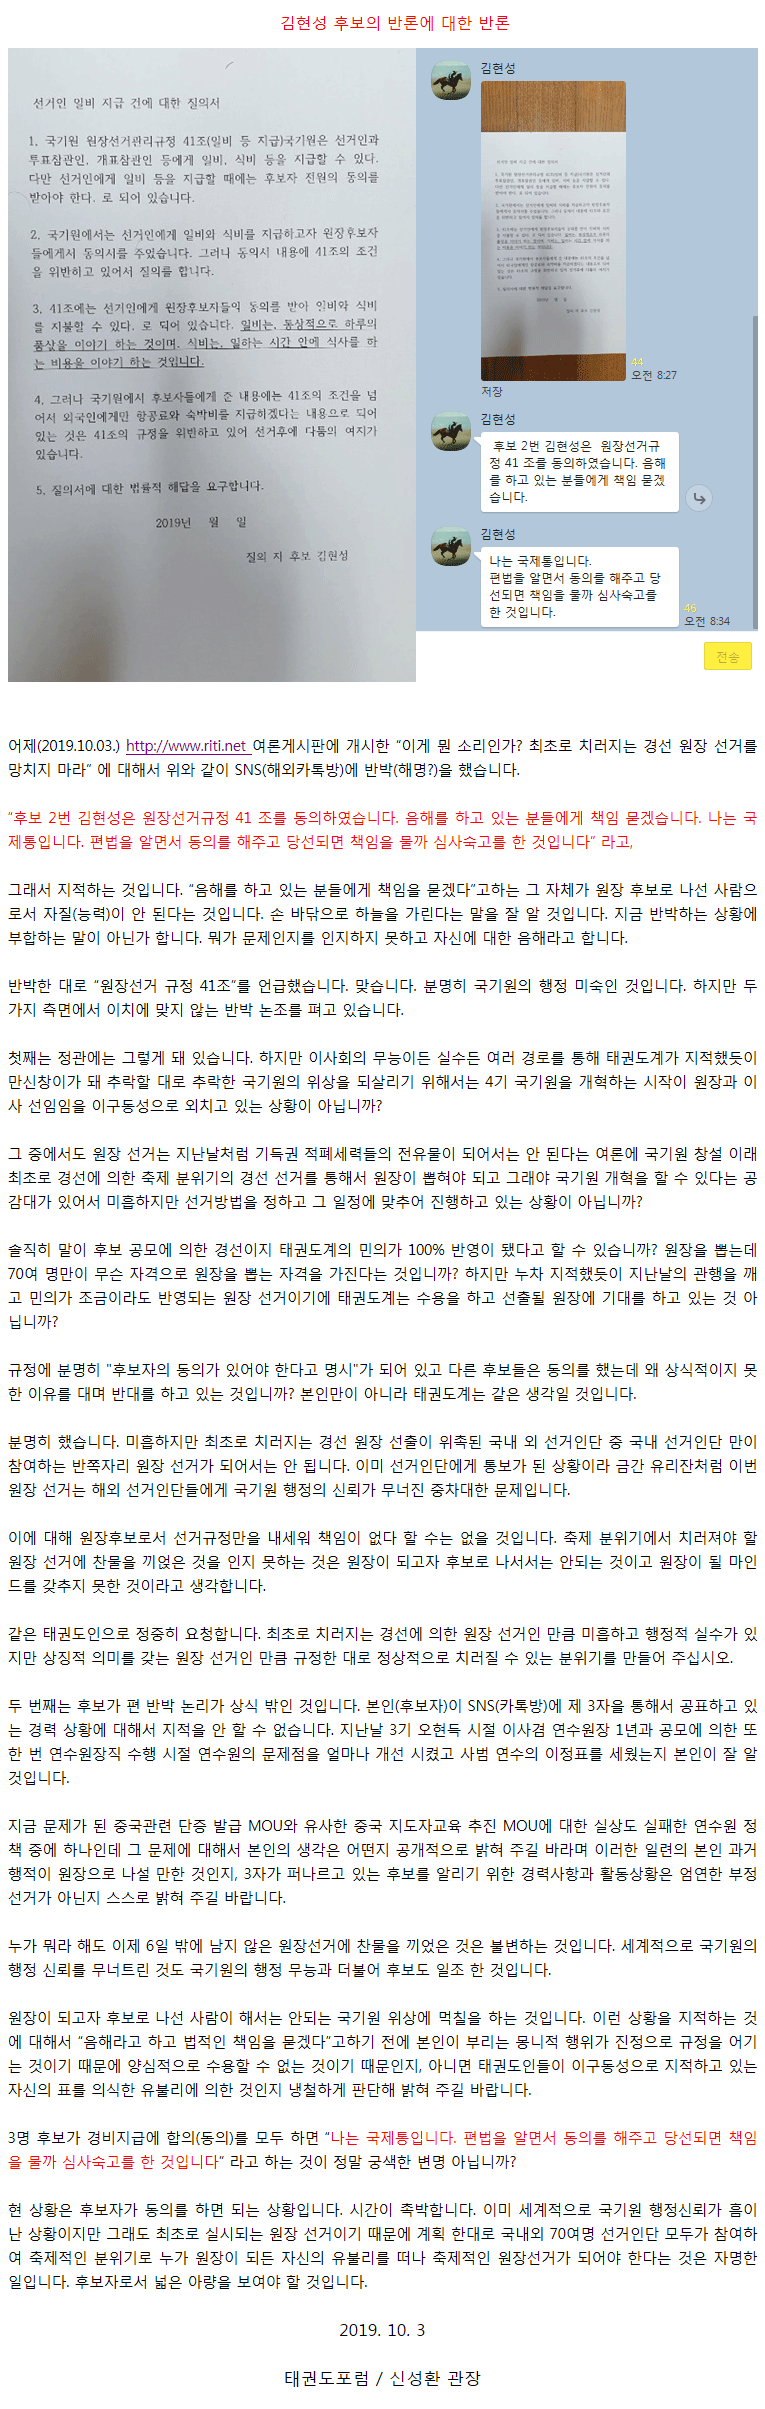 20191003_이게뭔소리인가김현성후보는원장선거를망치지마라에대한반론1.gif